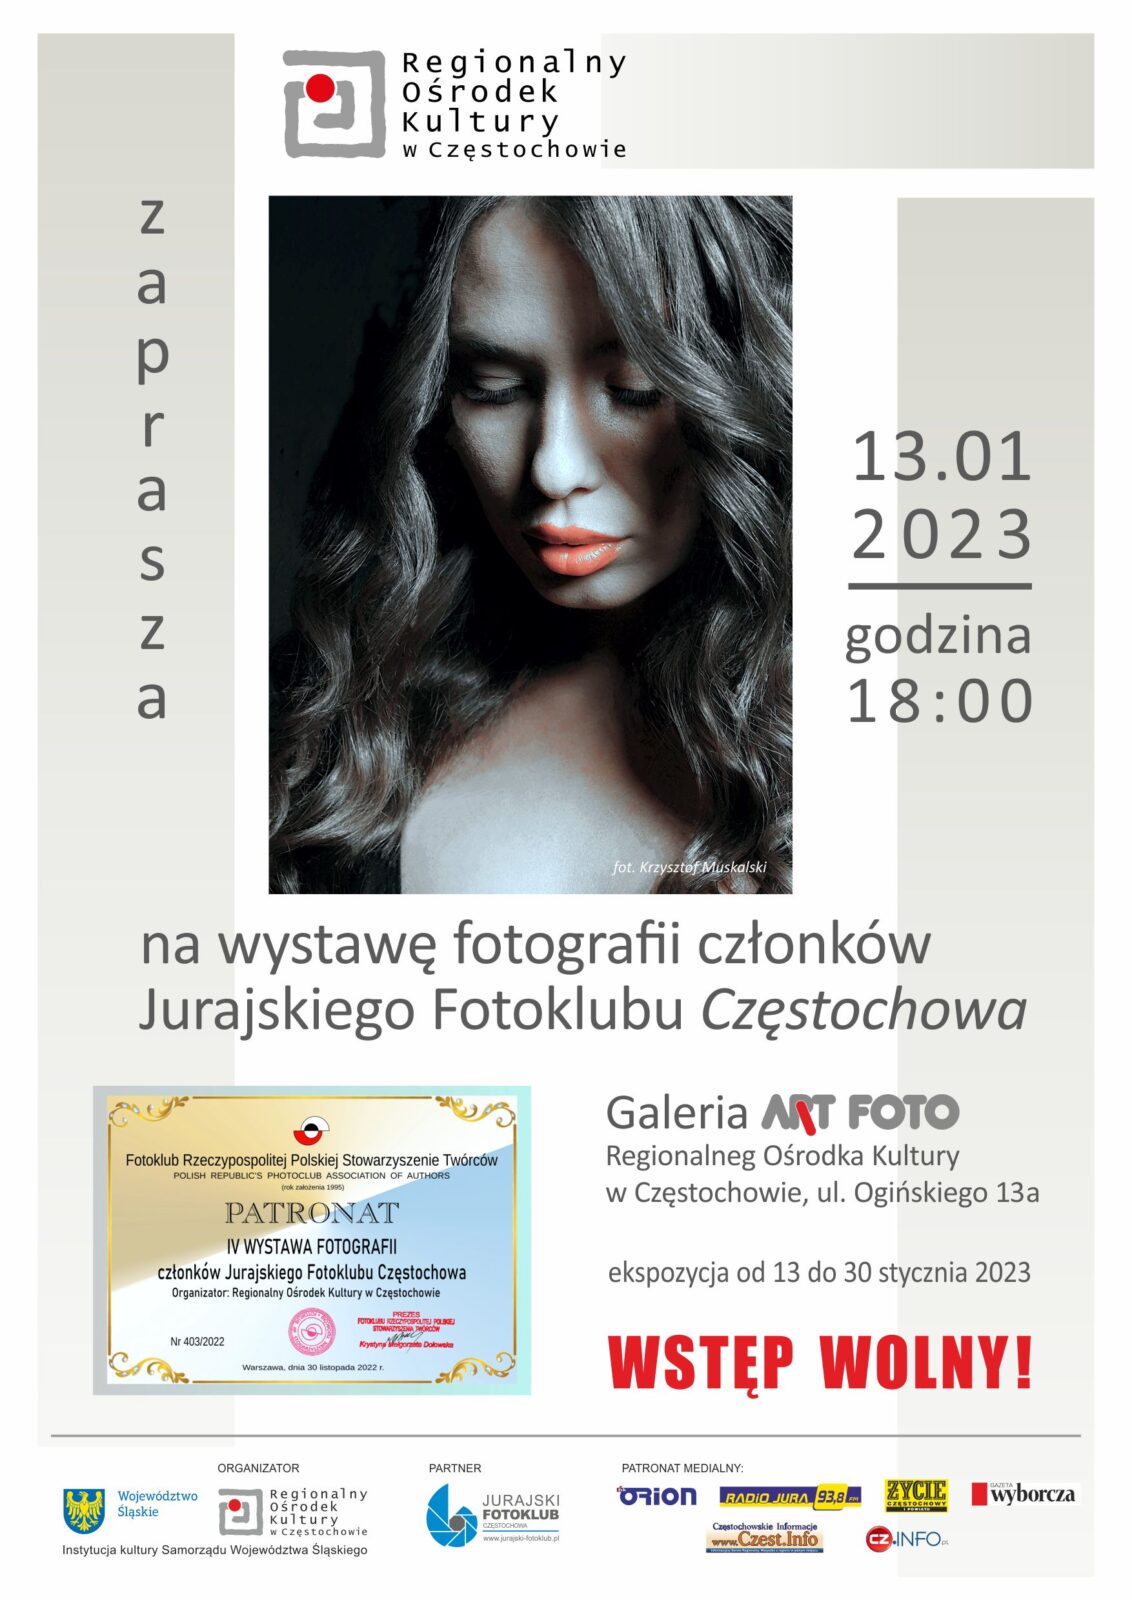 Regionalny Ośrodek Kultury. Wystawa członków Jurajskiego Fotoklubu Częstochowa 8